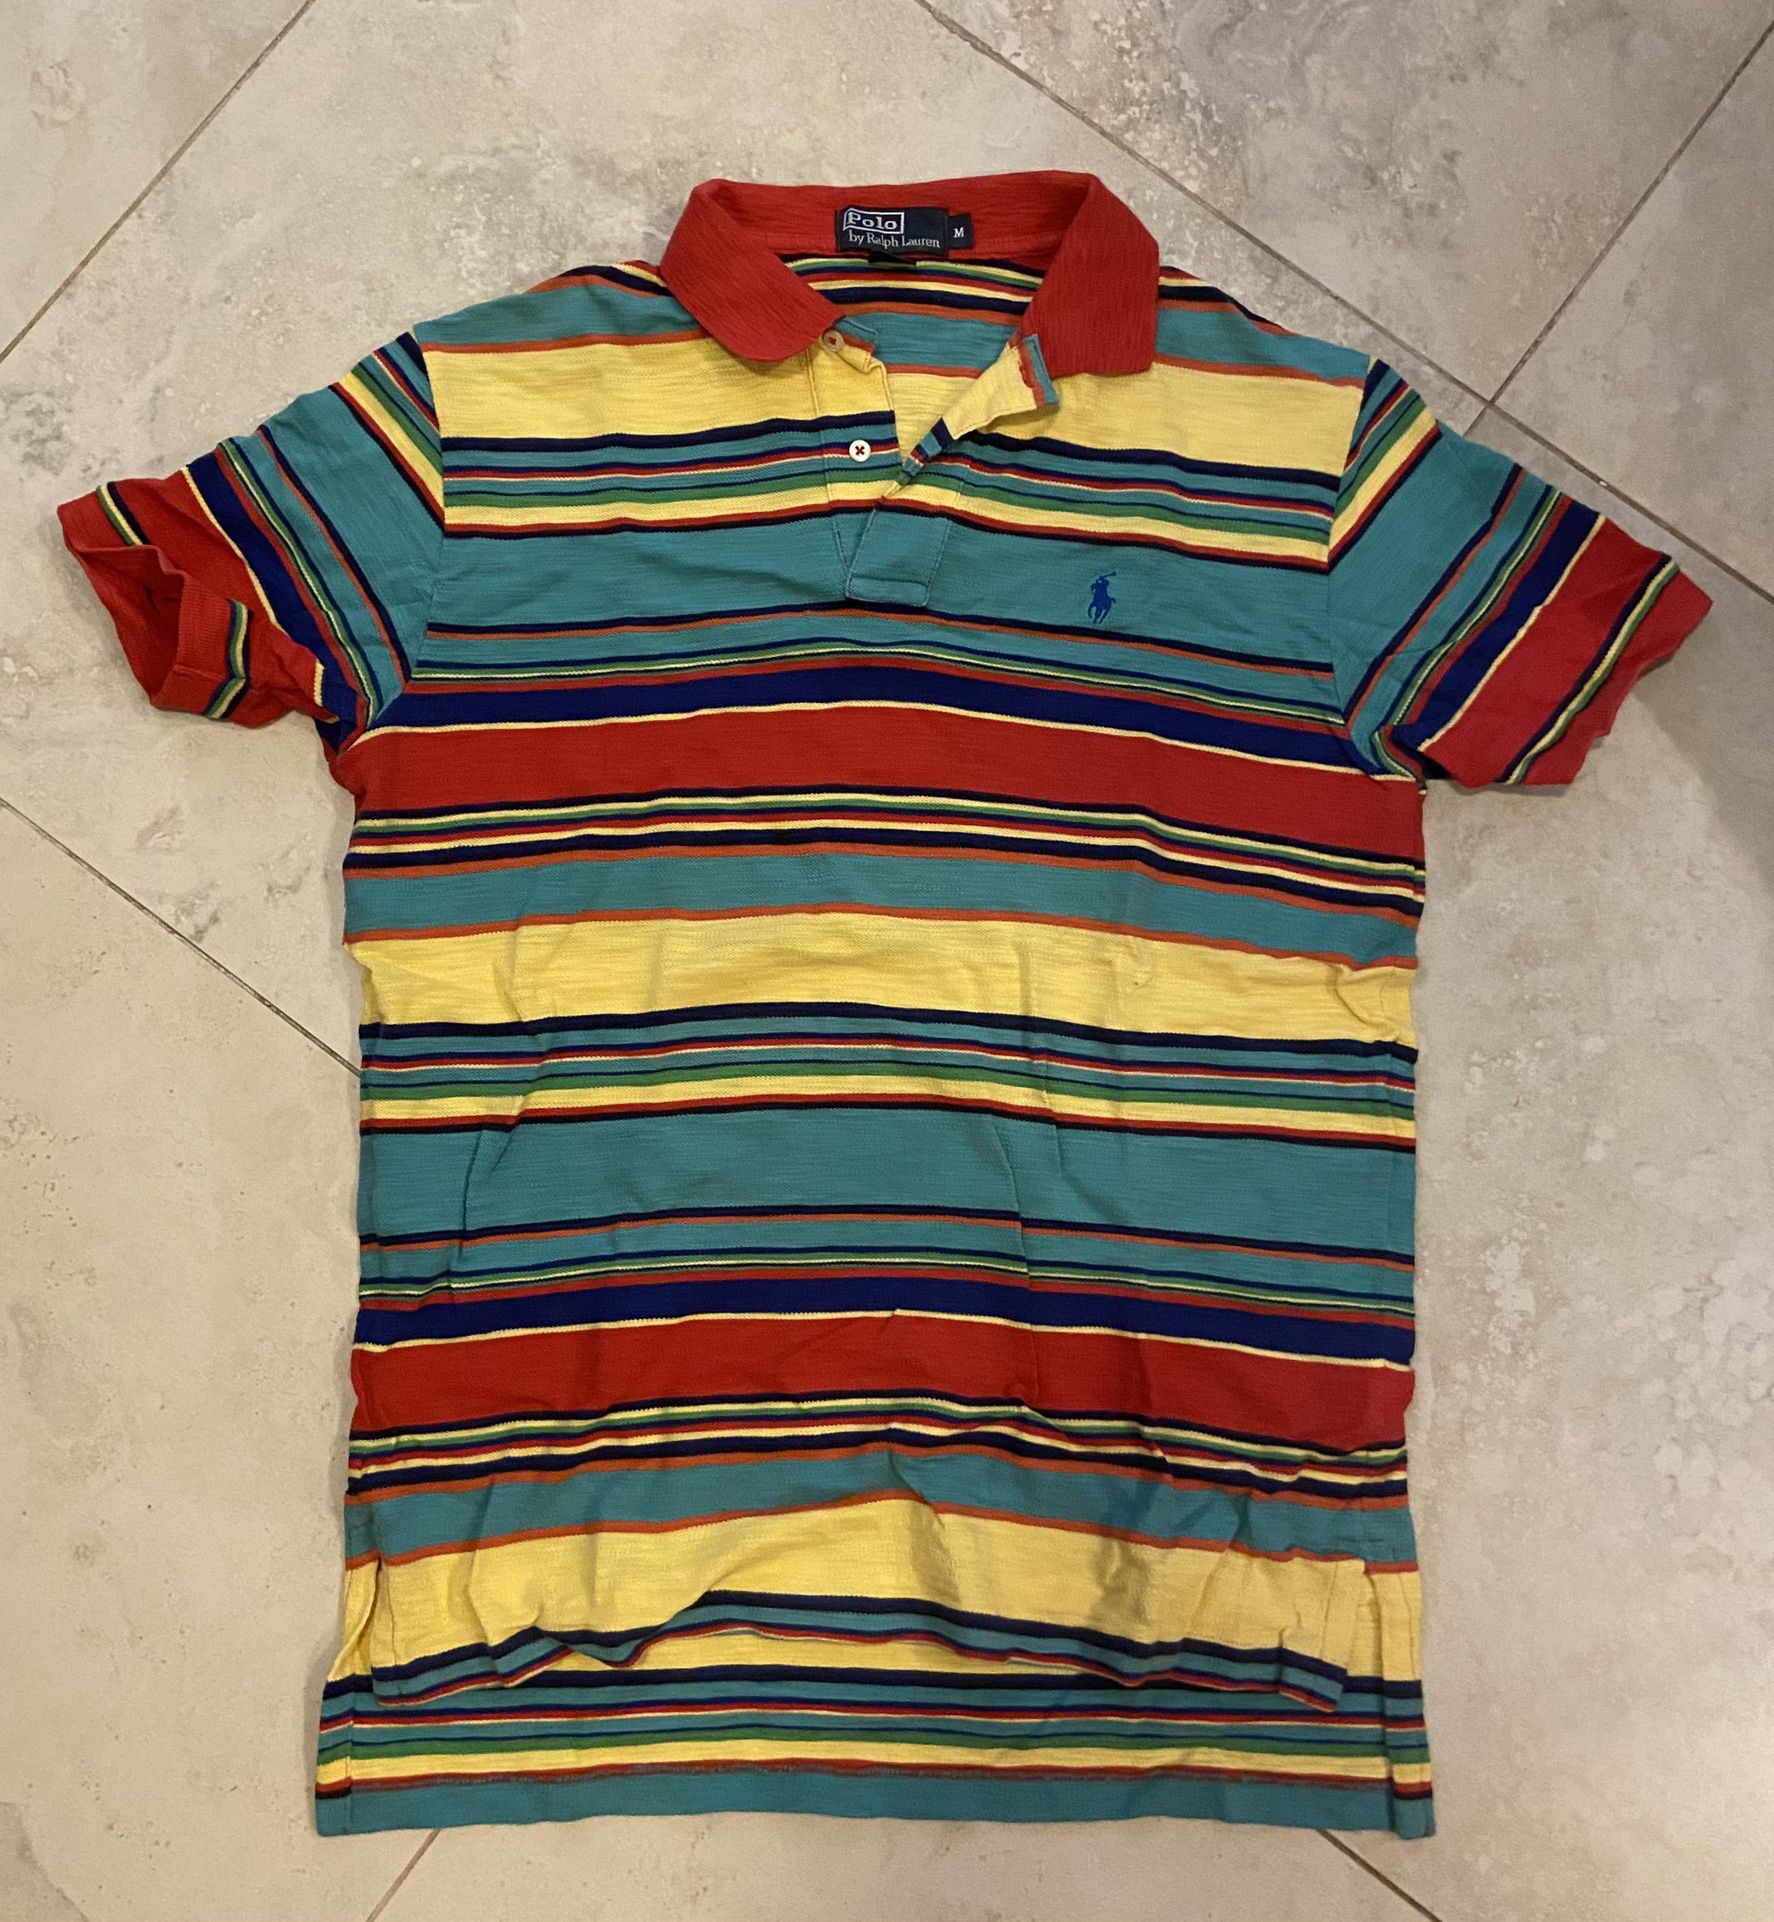 100% Cotton Men’s Polo Ralph Lauren Polo Shirt - Size M- Great Condition